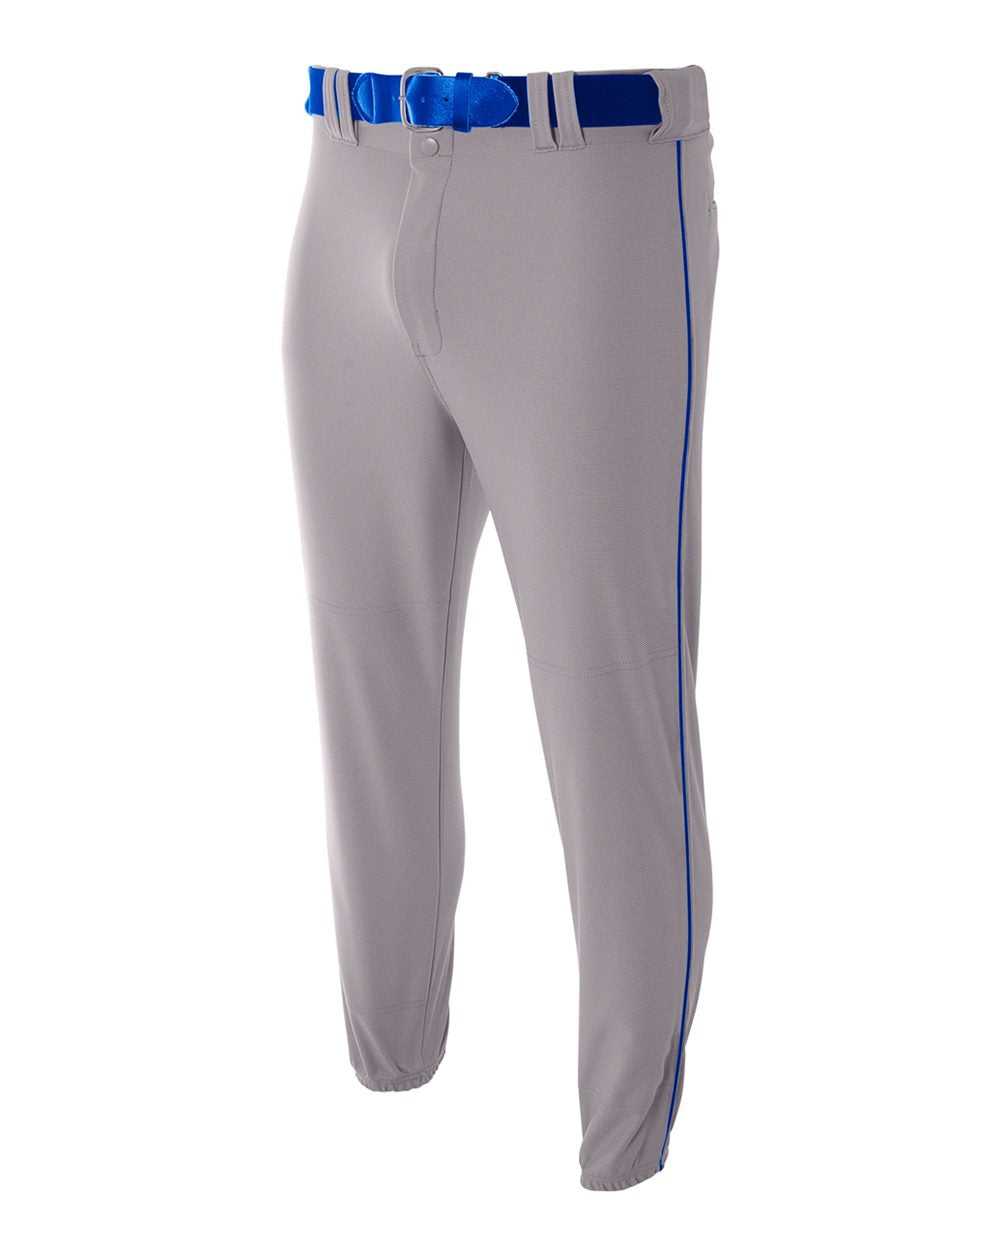 A4 N6178 Pro Style Elastic Bottom Baseball Pant - Gray Royal - HIT a Double